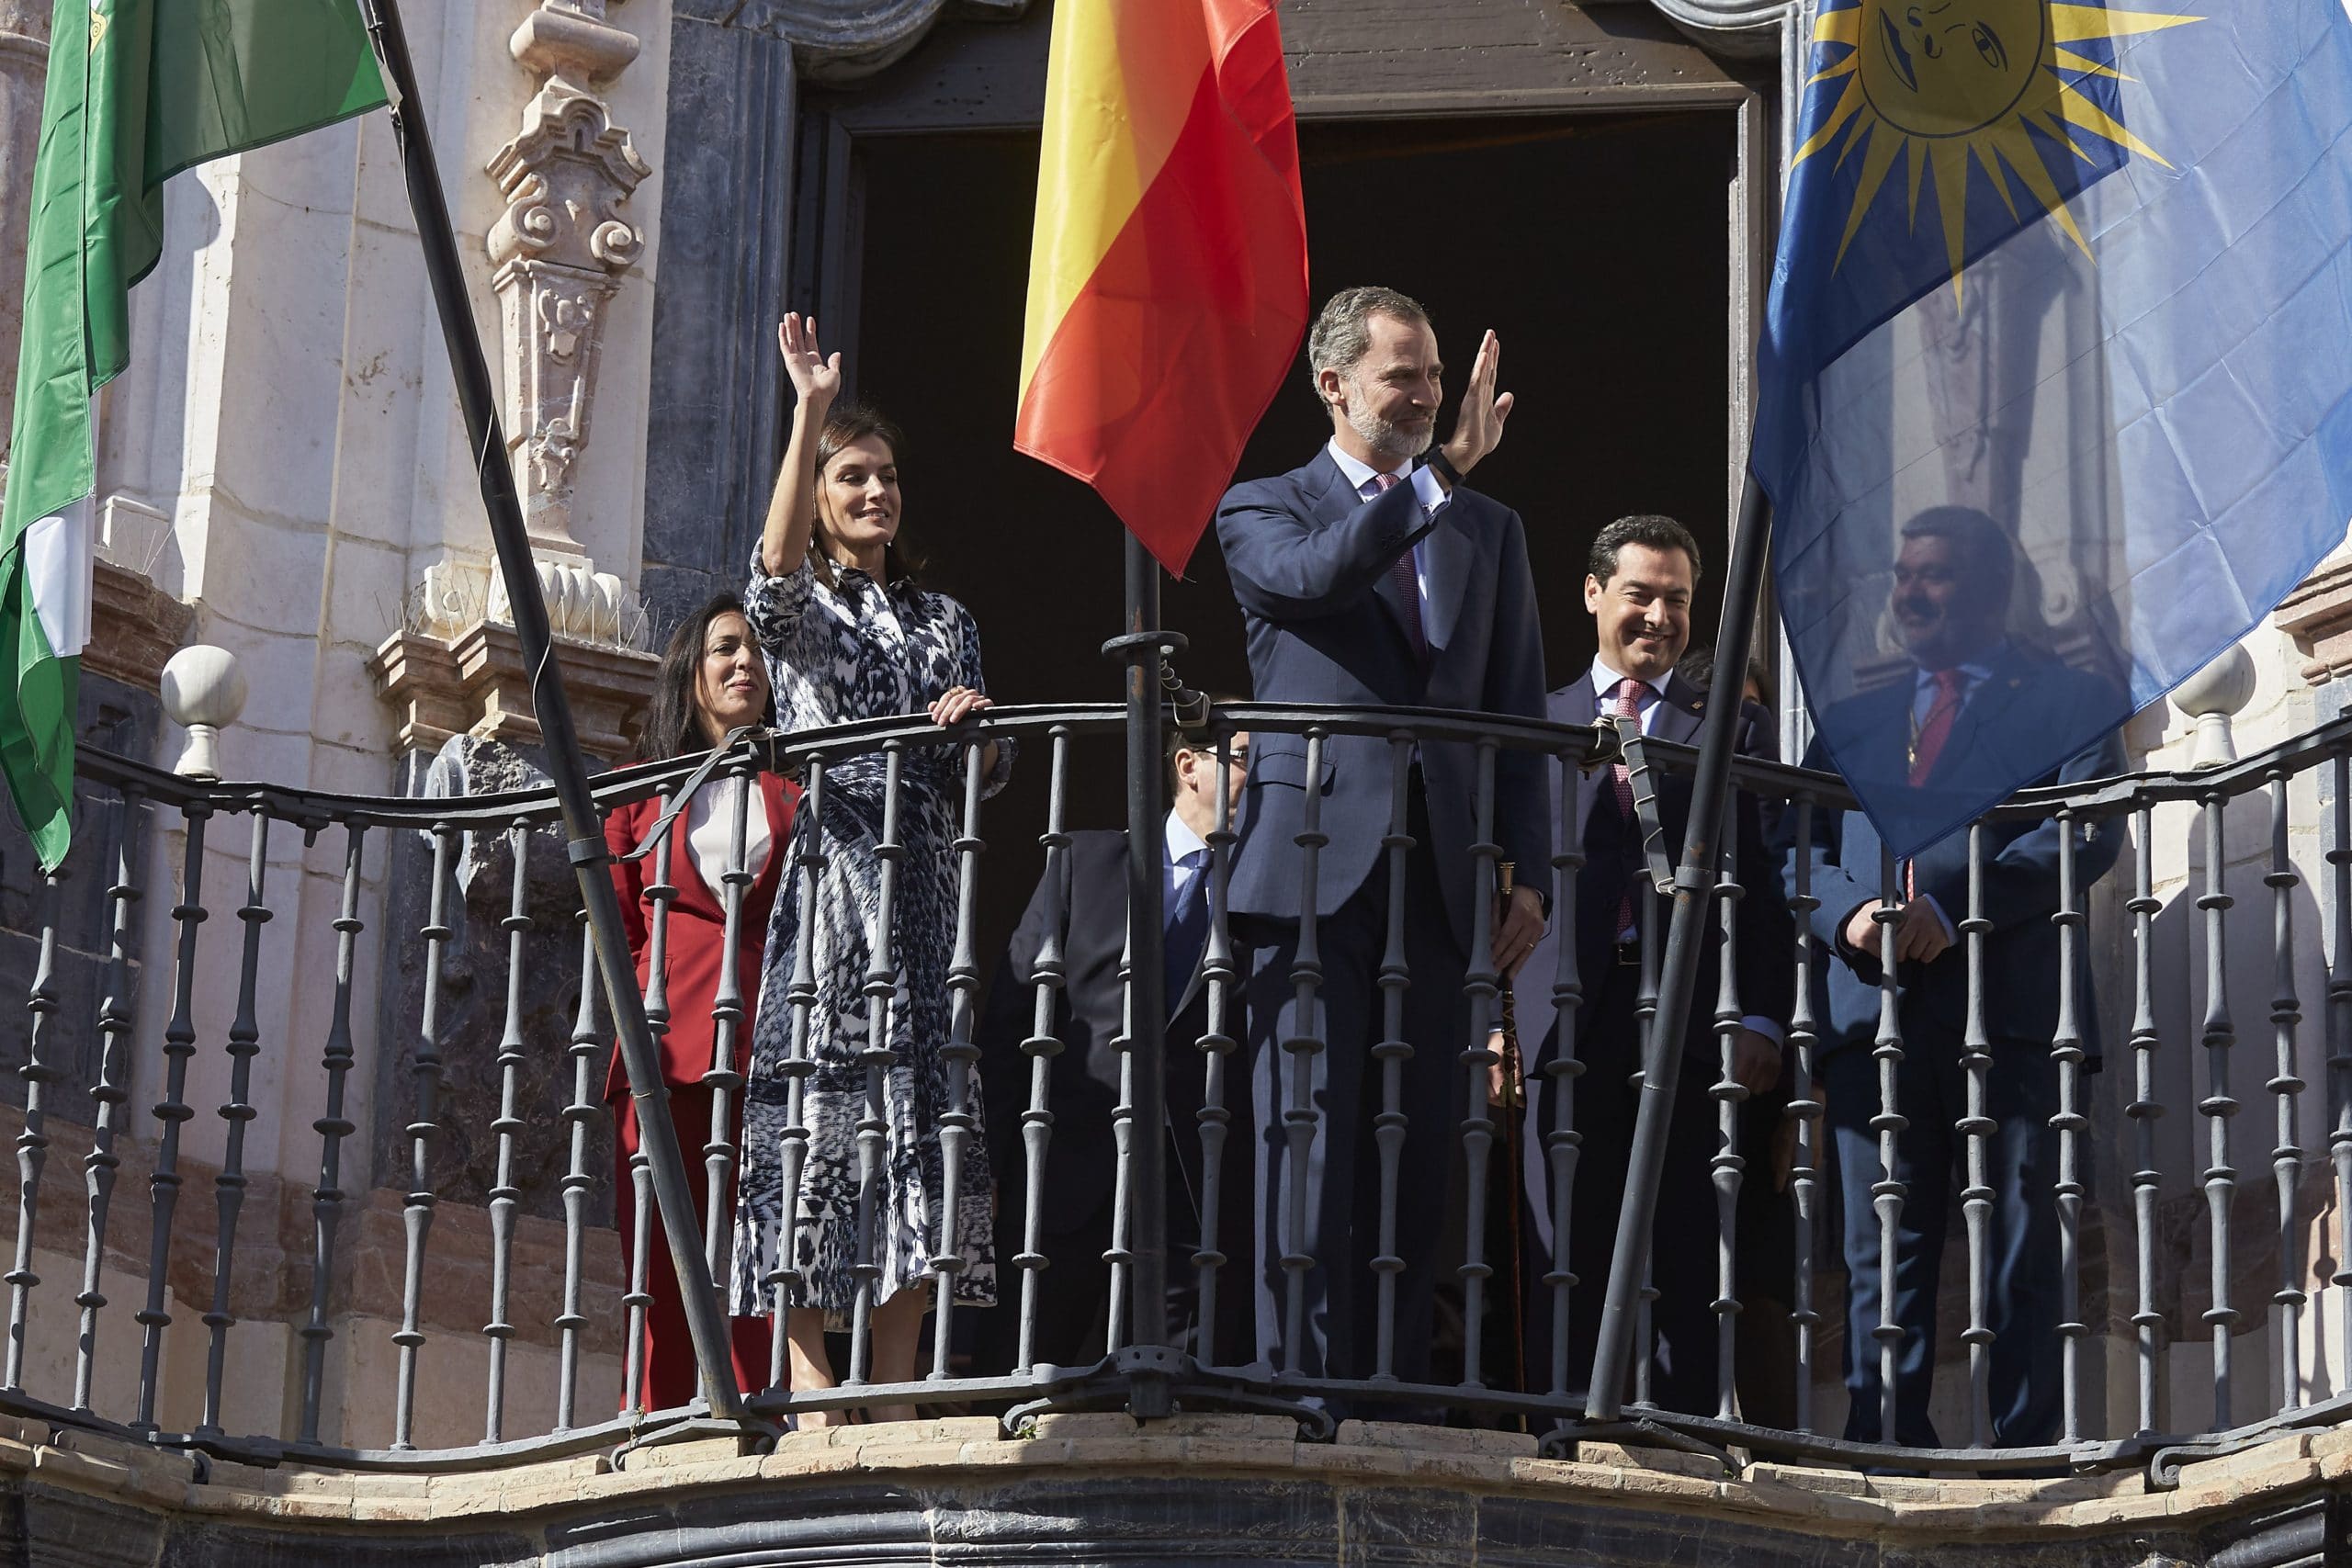 Le roi Philippe VI d'Espagne et son épouse, la reine Letizia, le 6 février 2020 à Ecija, en Espagne
00943919_000057
Photo : Miguel Cordoba/SIPA